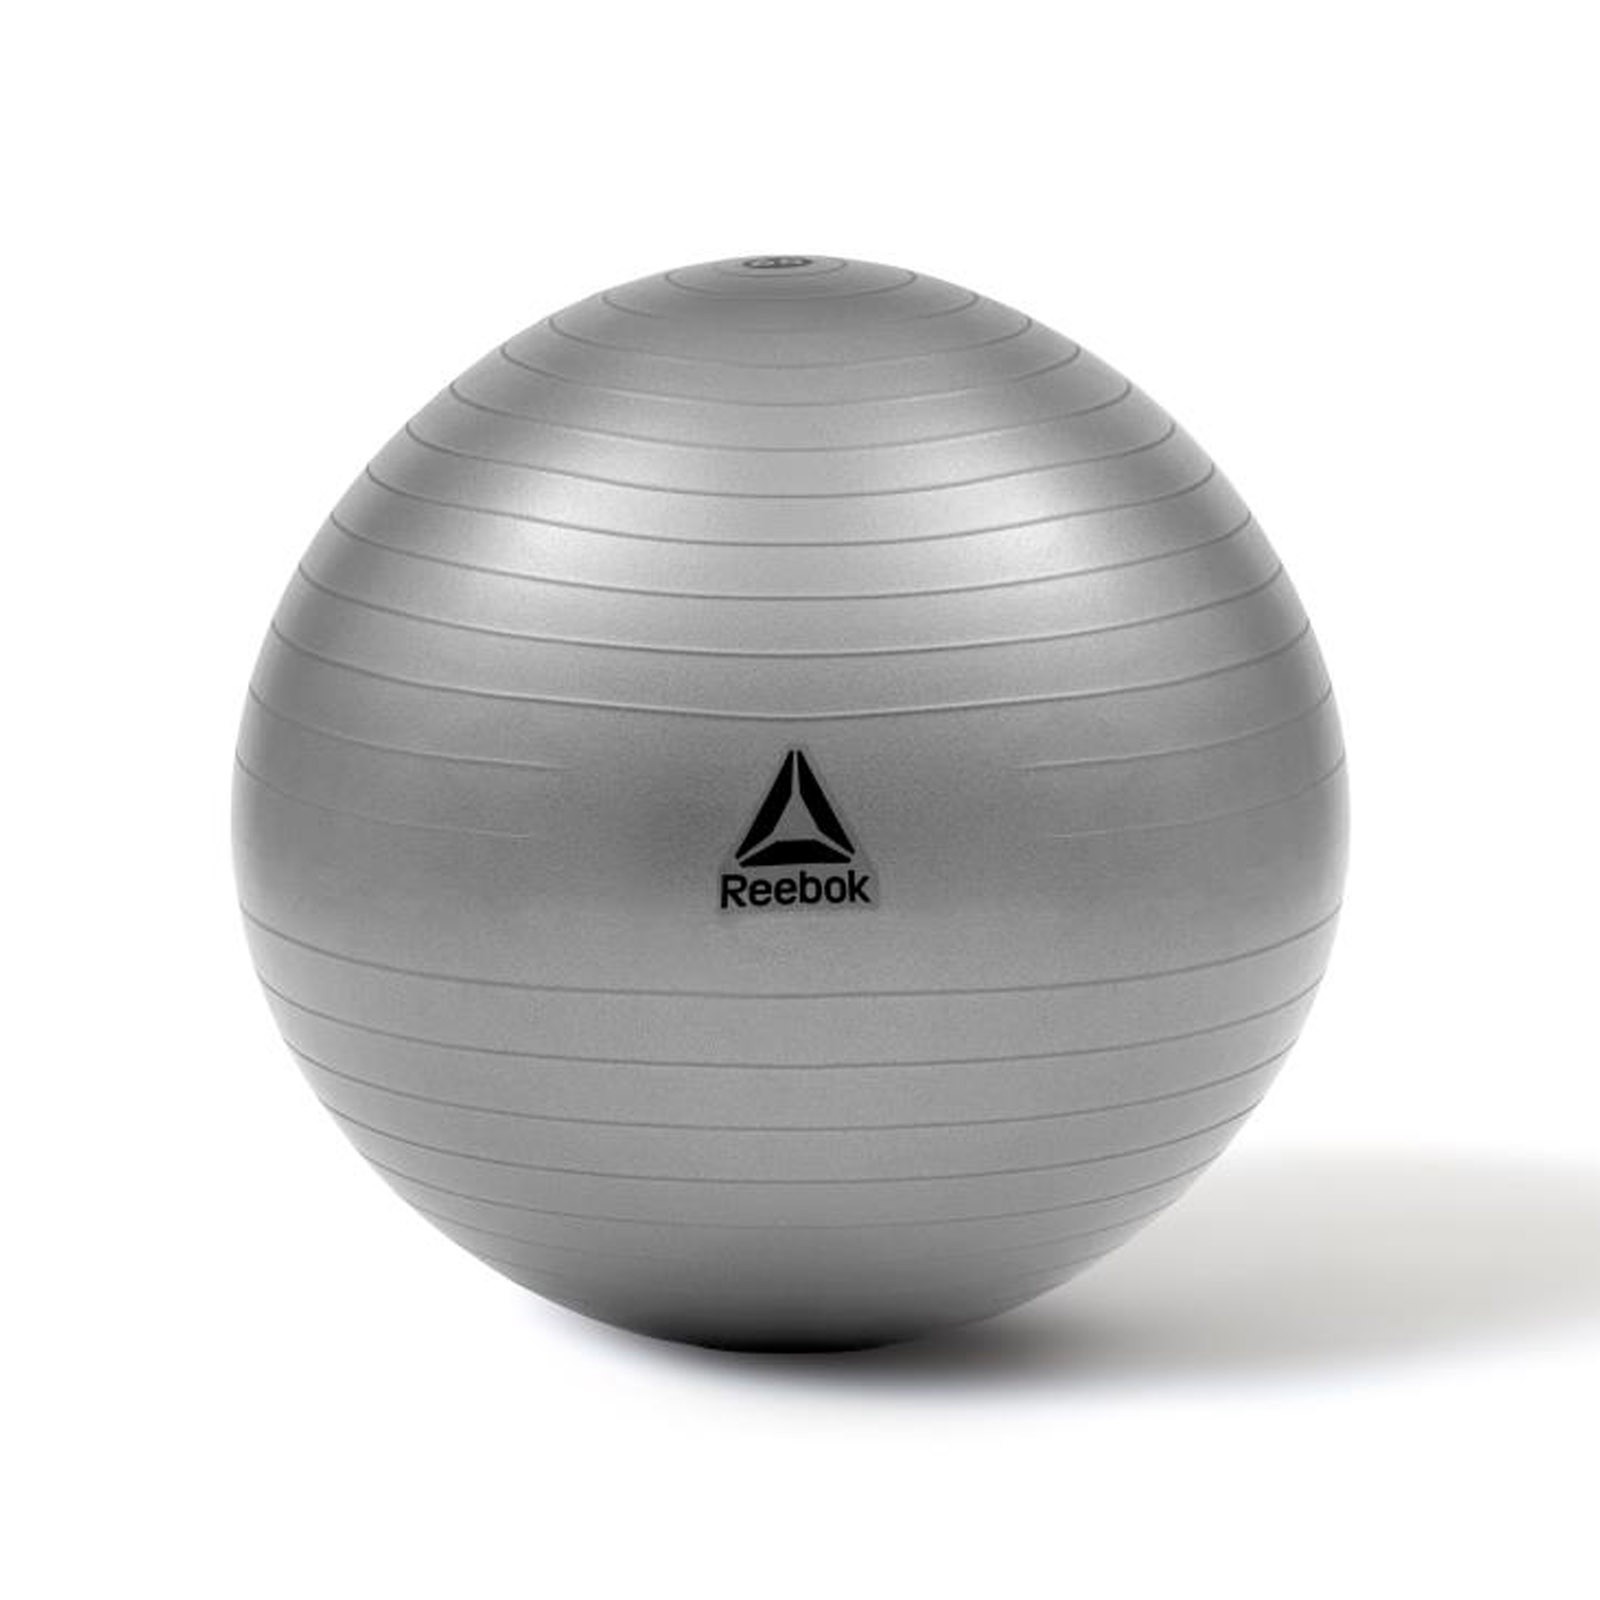 Reebok Ball - Shop Online - Fitness